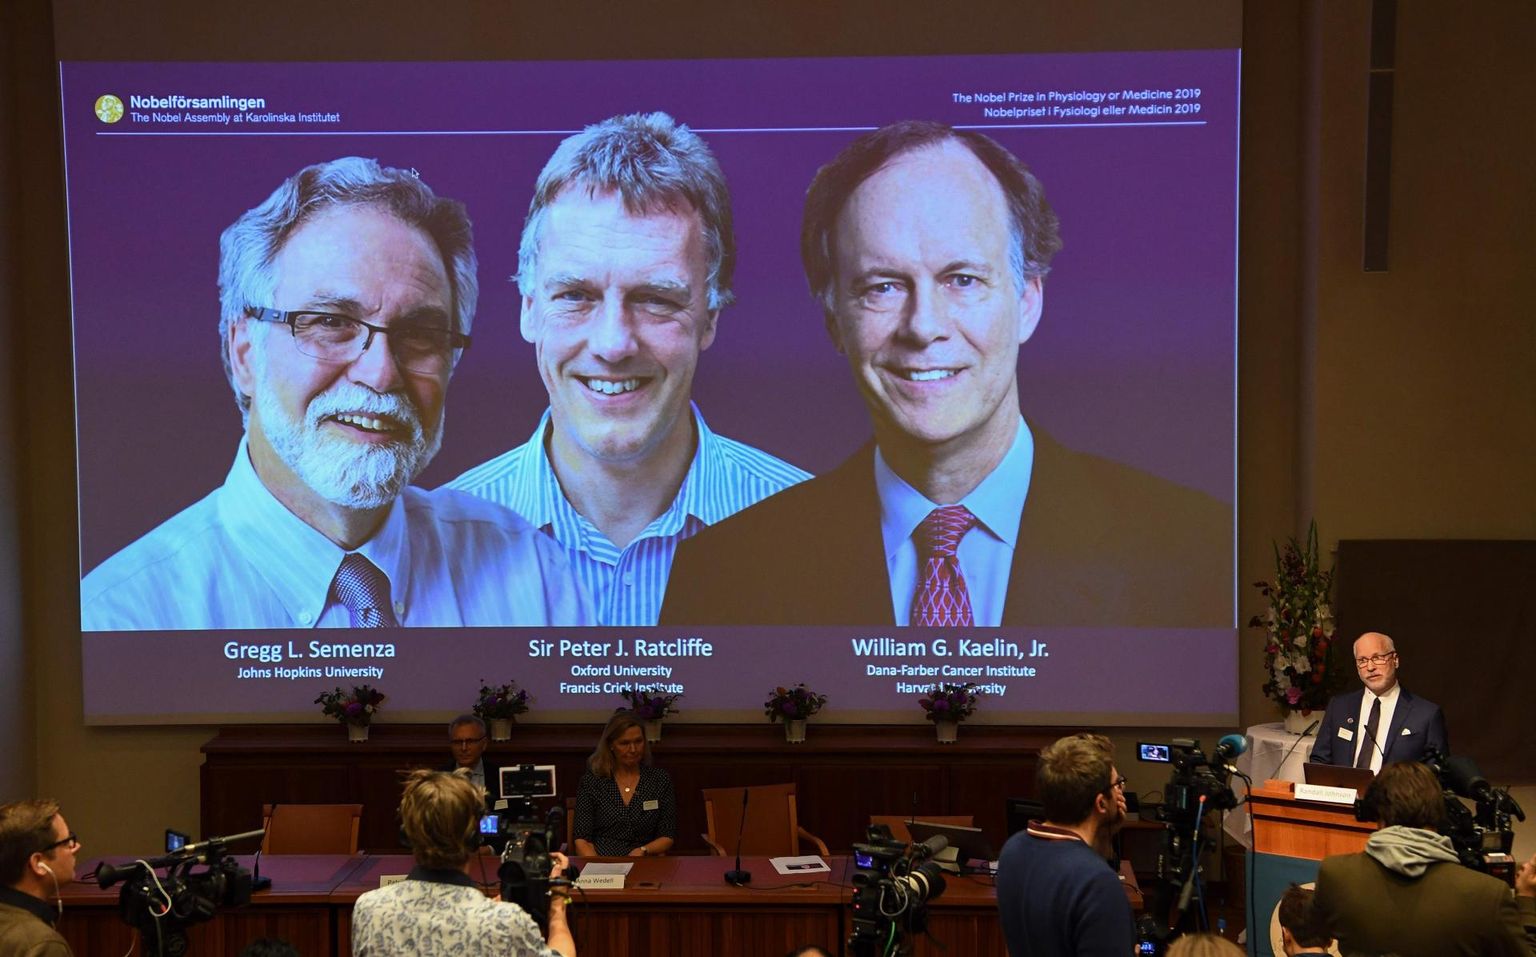 Tänavuse Nobeli meditsiiniauhinna laureaadid (vasakult paremale): Gregg L. Semenza, Peter J. Ratcliffe ja William G. Kaelin.